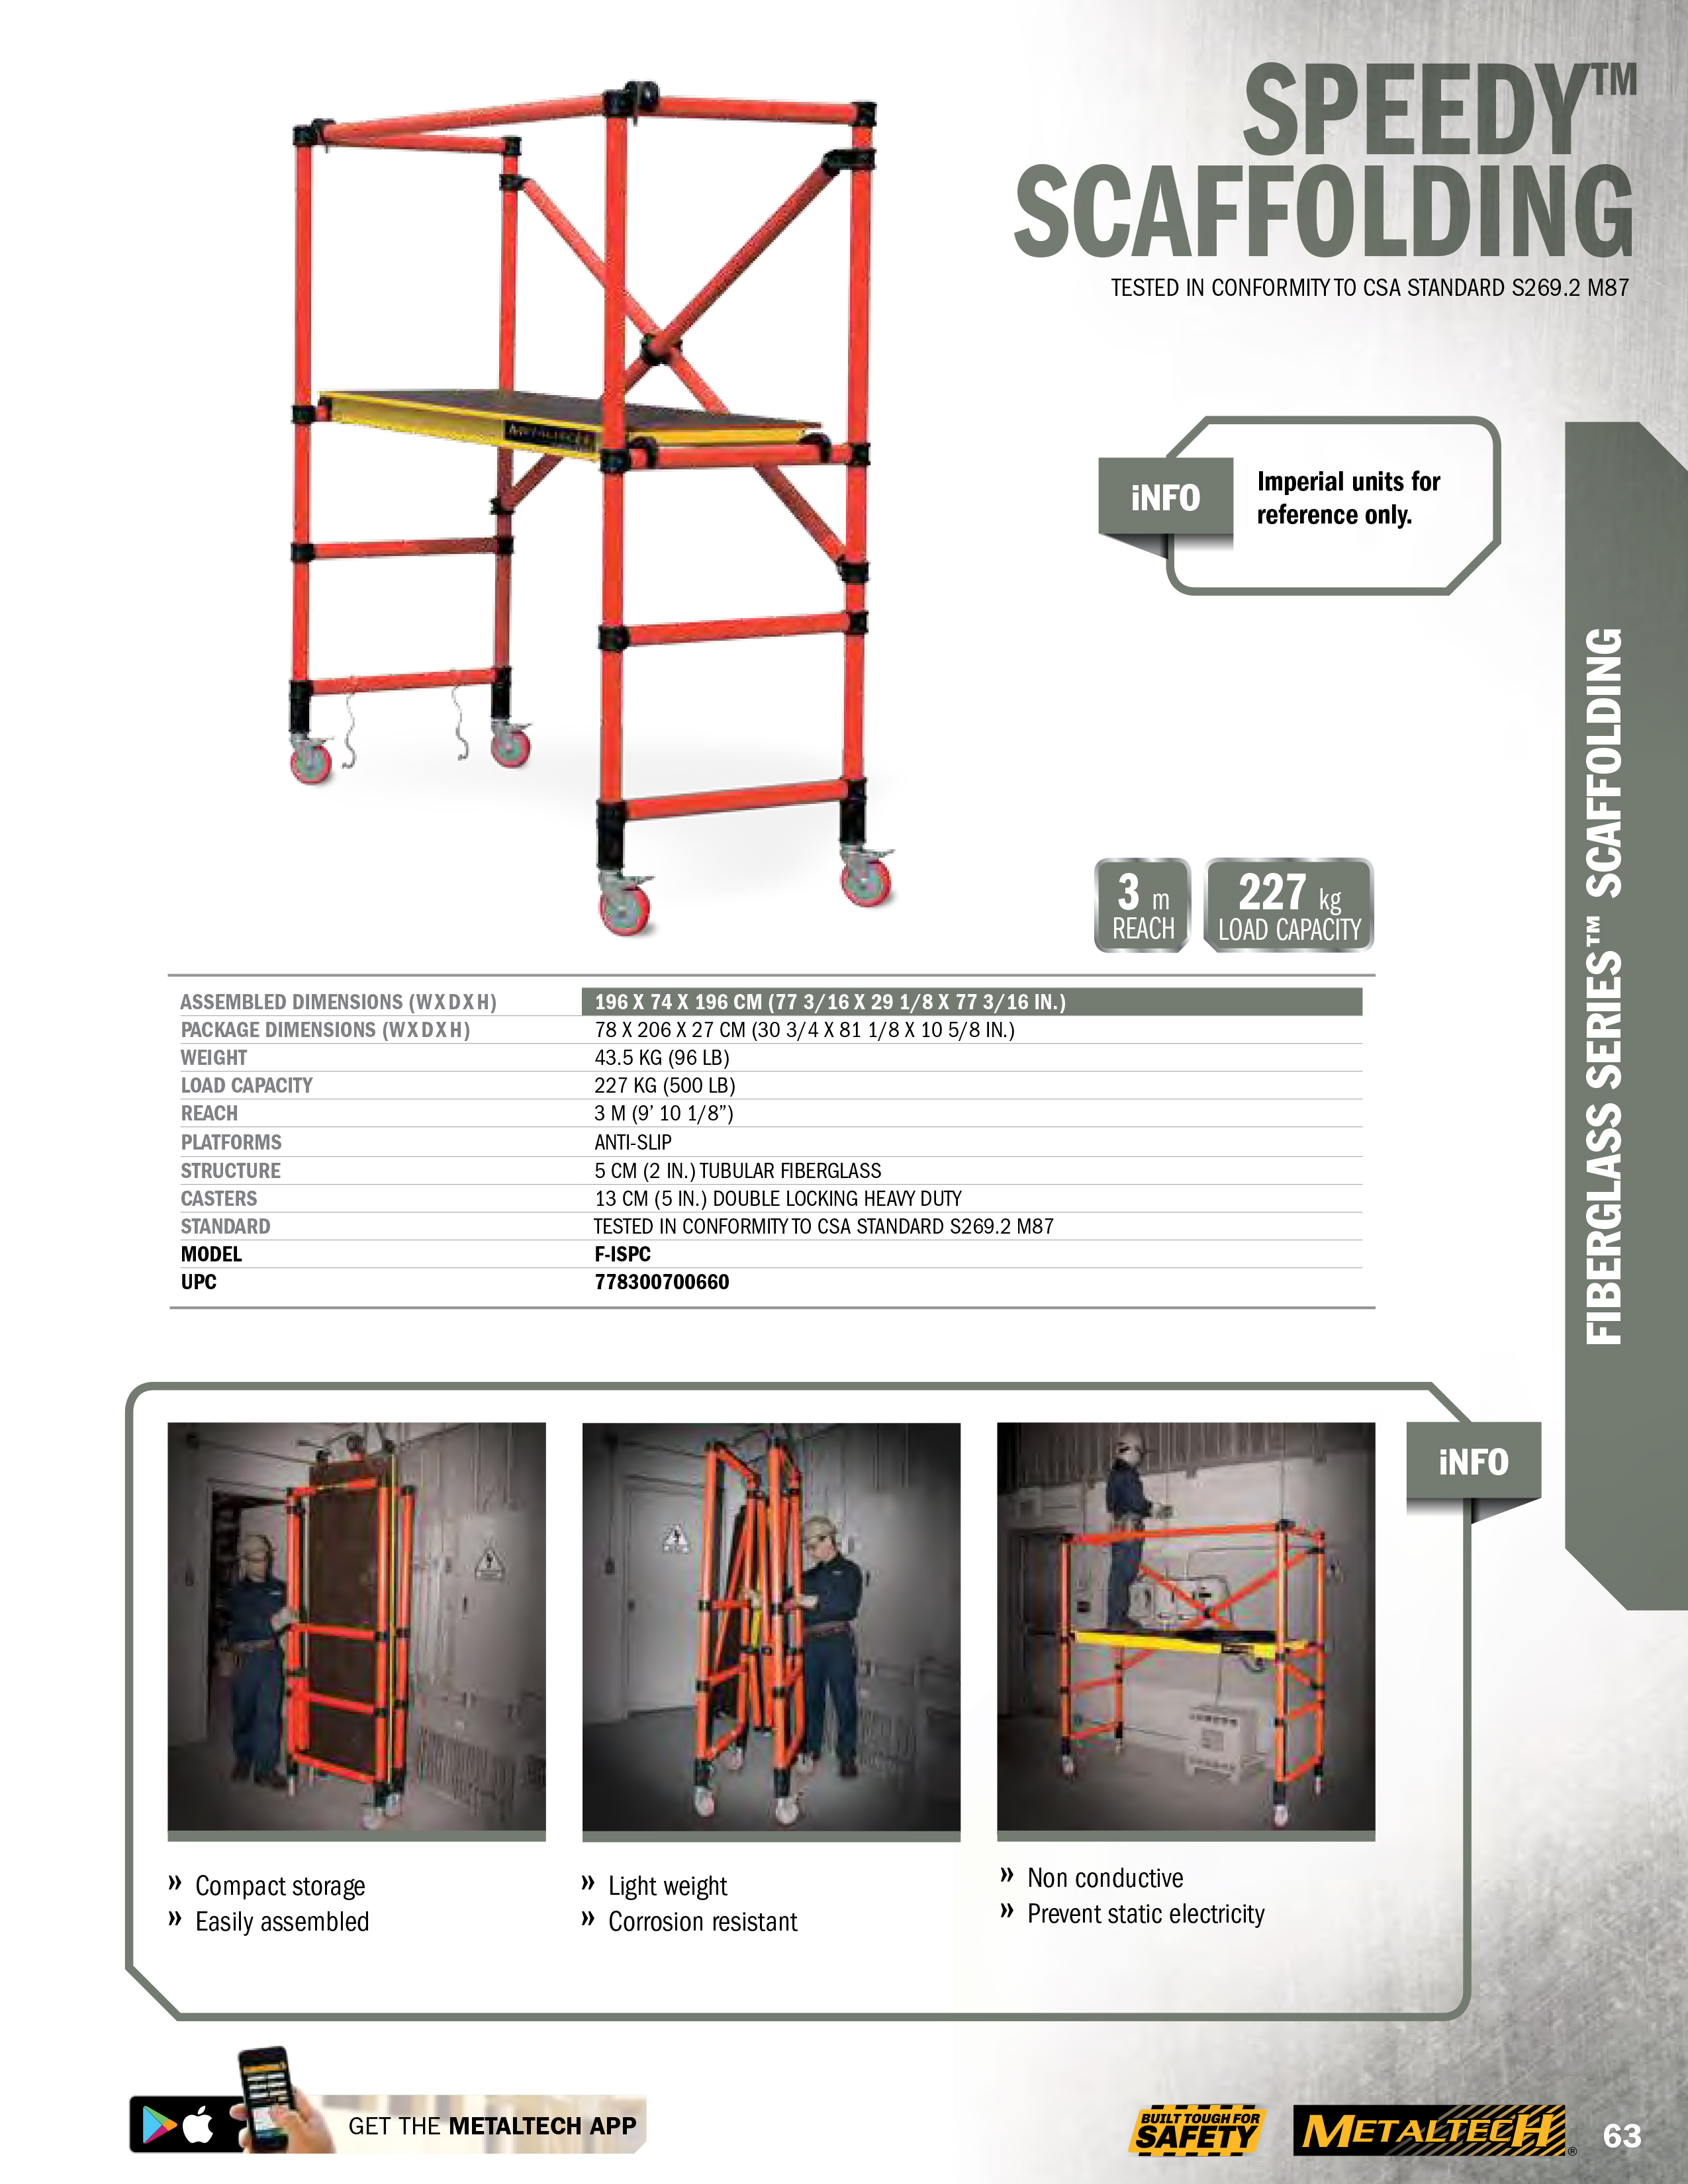 metaltech-fiberglass-scaffold-speedy.jpg